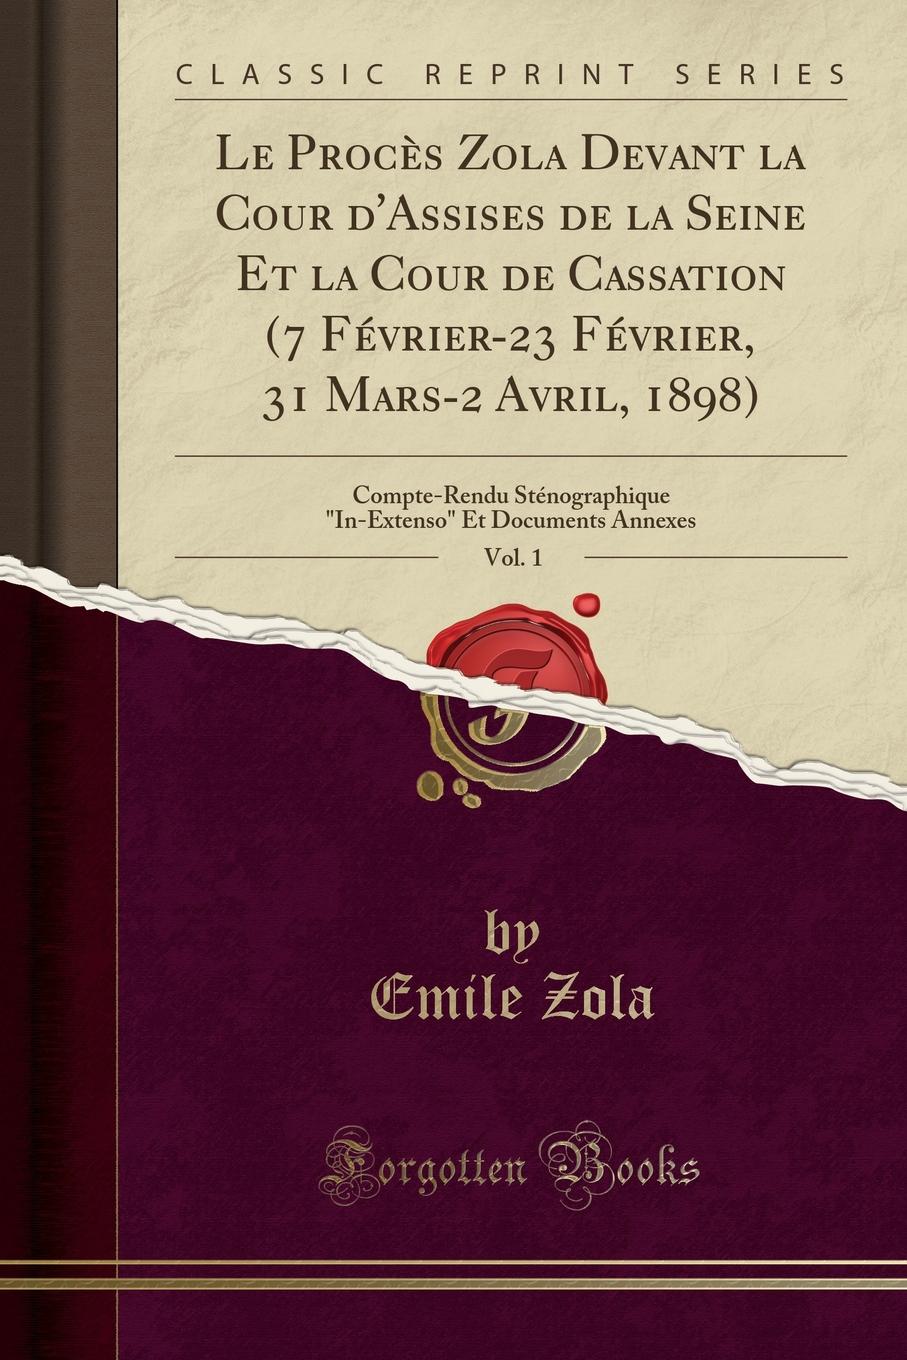 Emile Zola Le Proces Zola Devant la Cour d.Assises de la Seine Et la Cour de Cassation (7 Fevrier-23 Fevrier, 31 Mars-2 Avril, 1898), Vol. 1. Compte-Rendu Stenographique 